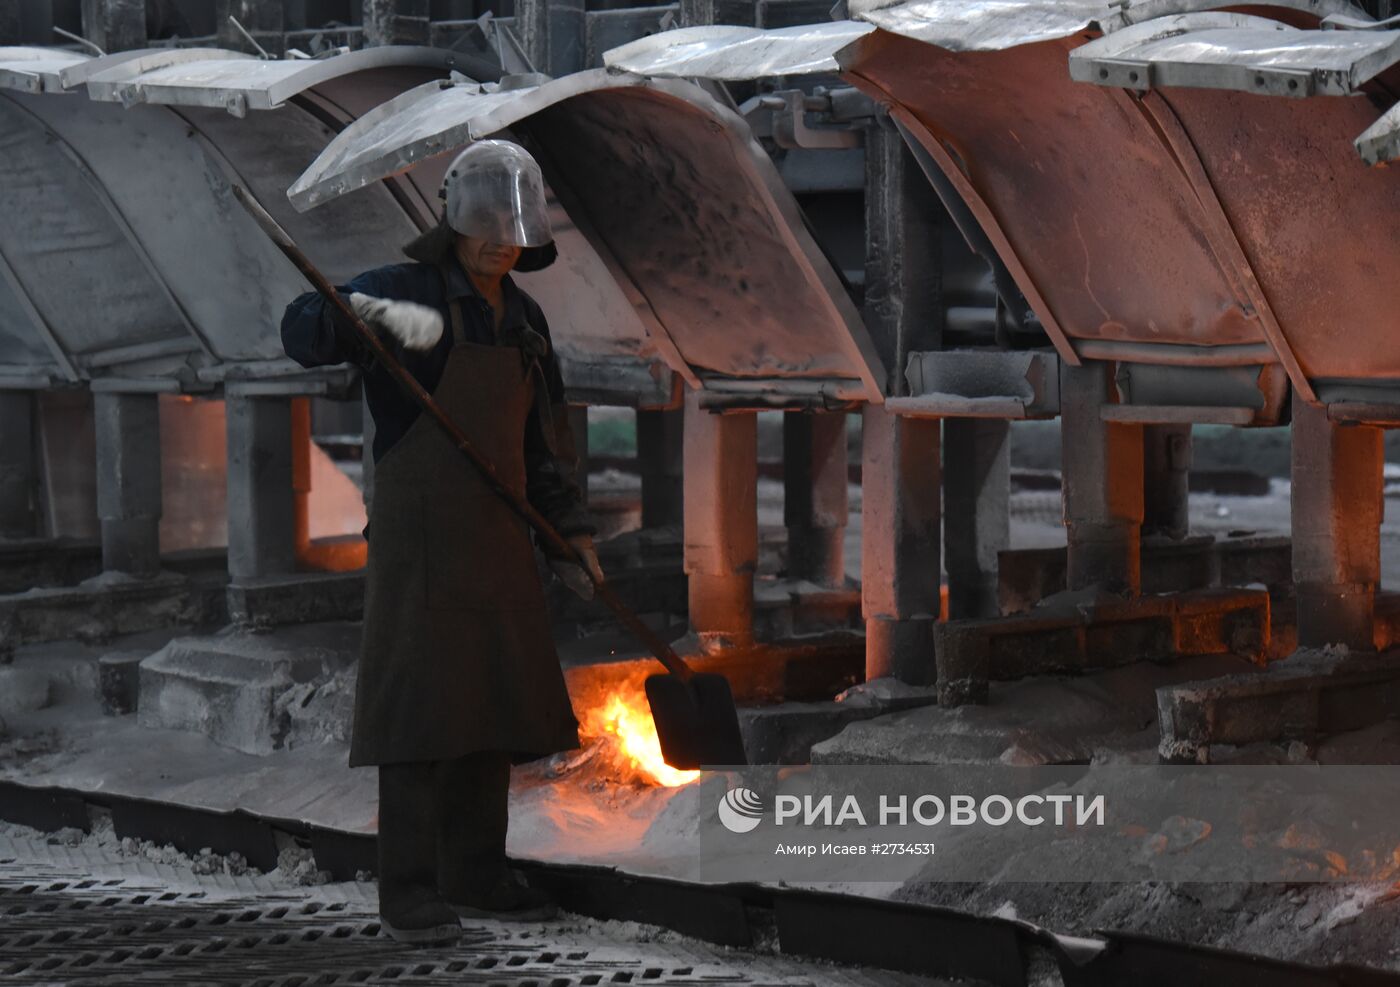 Производство алюминия на Таджикском алюминиевом заводе